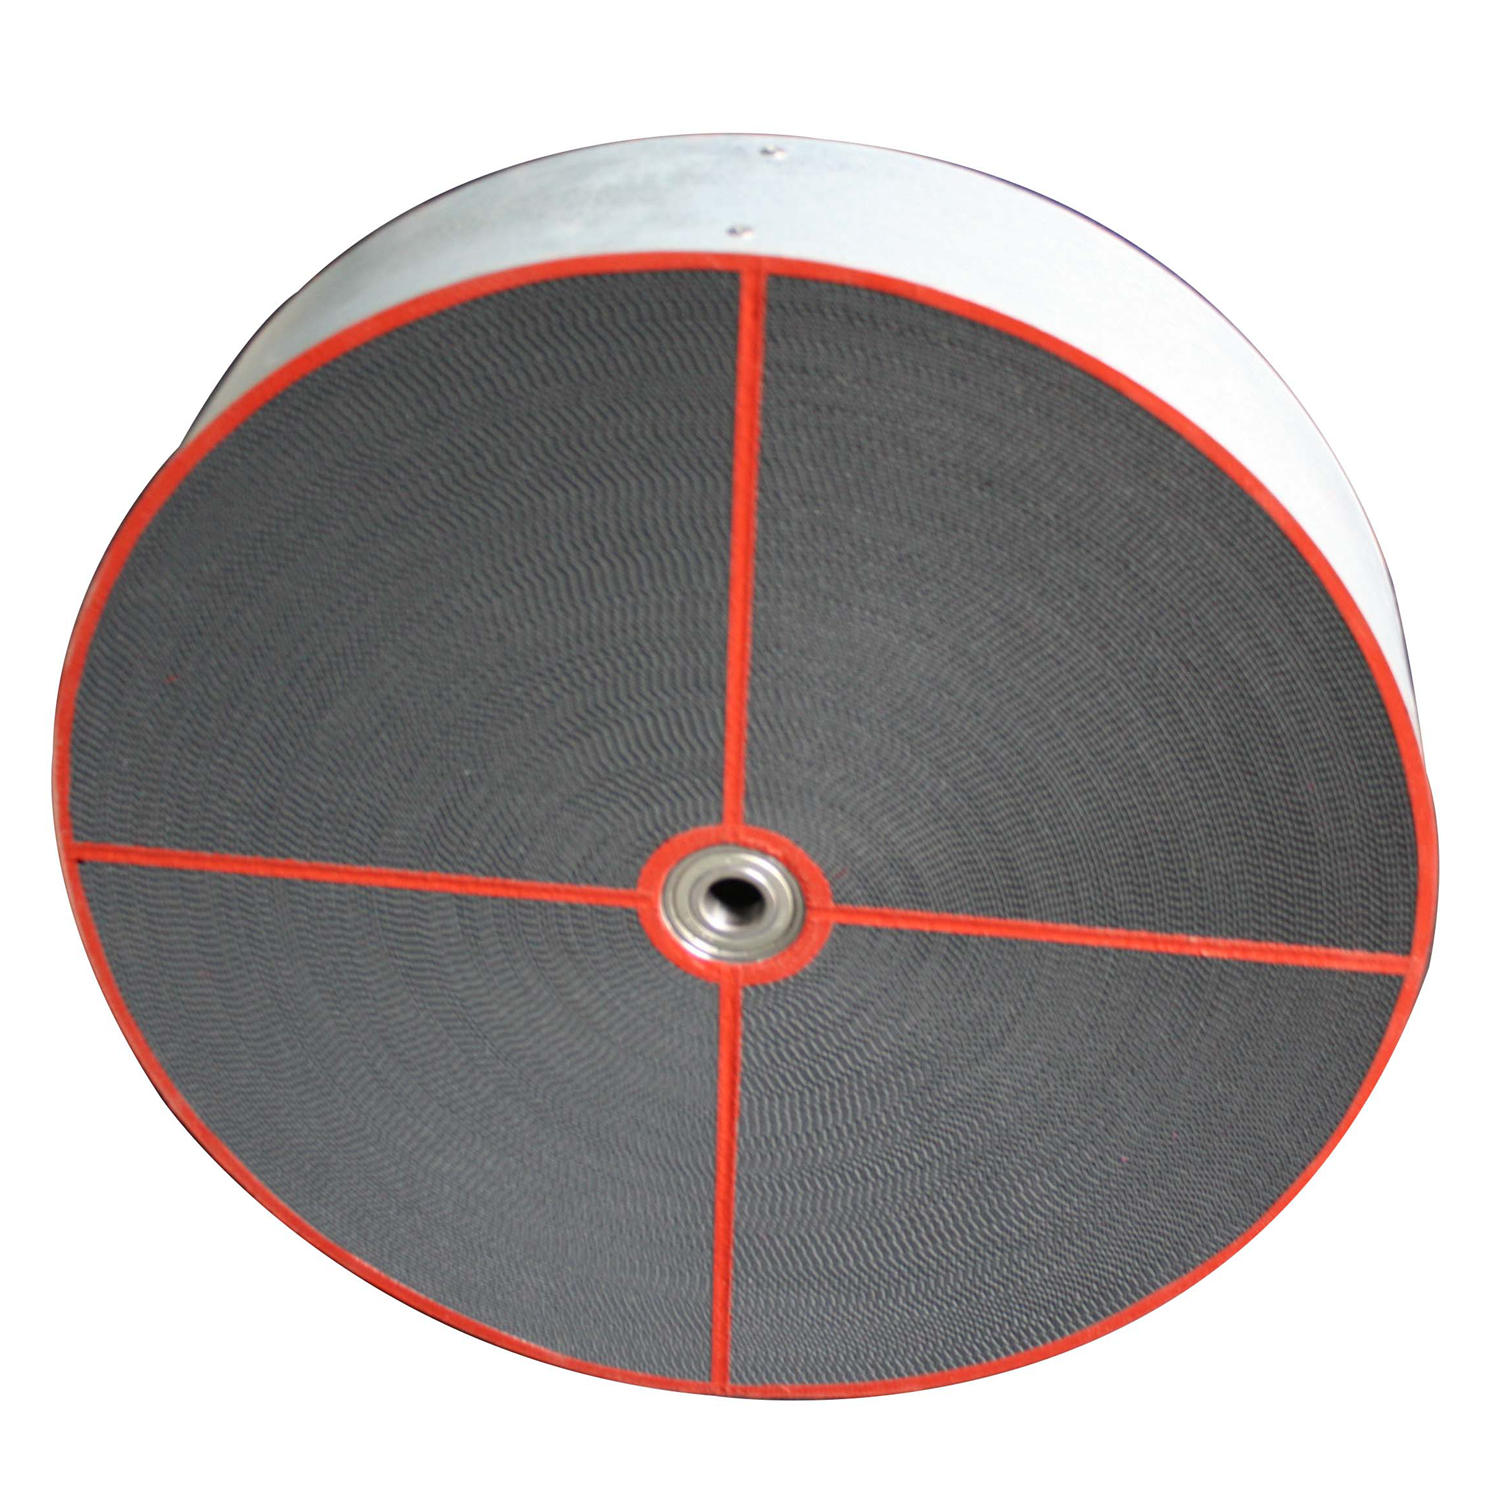 Rotor desecante de Puresci Material de gel de sílice activo adecuado para deshumidificadores desecantes fabricantes